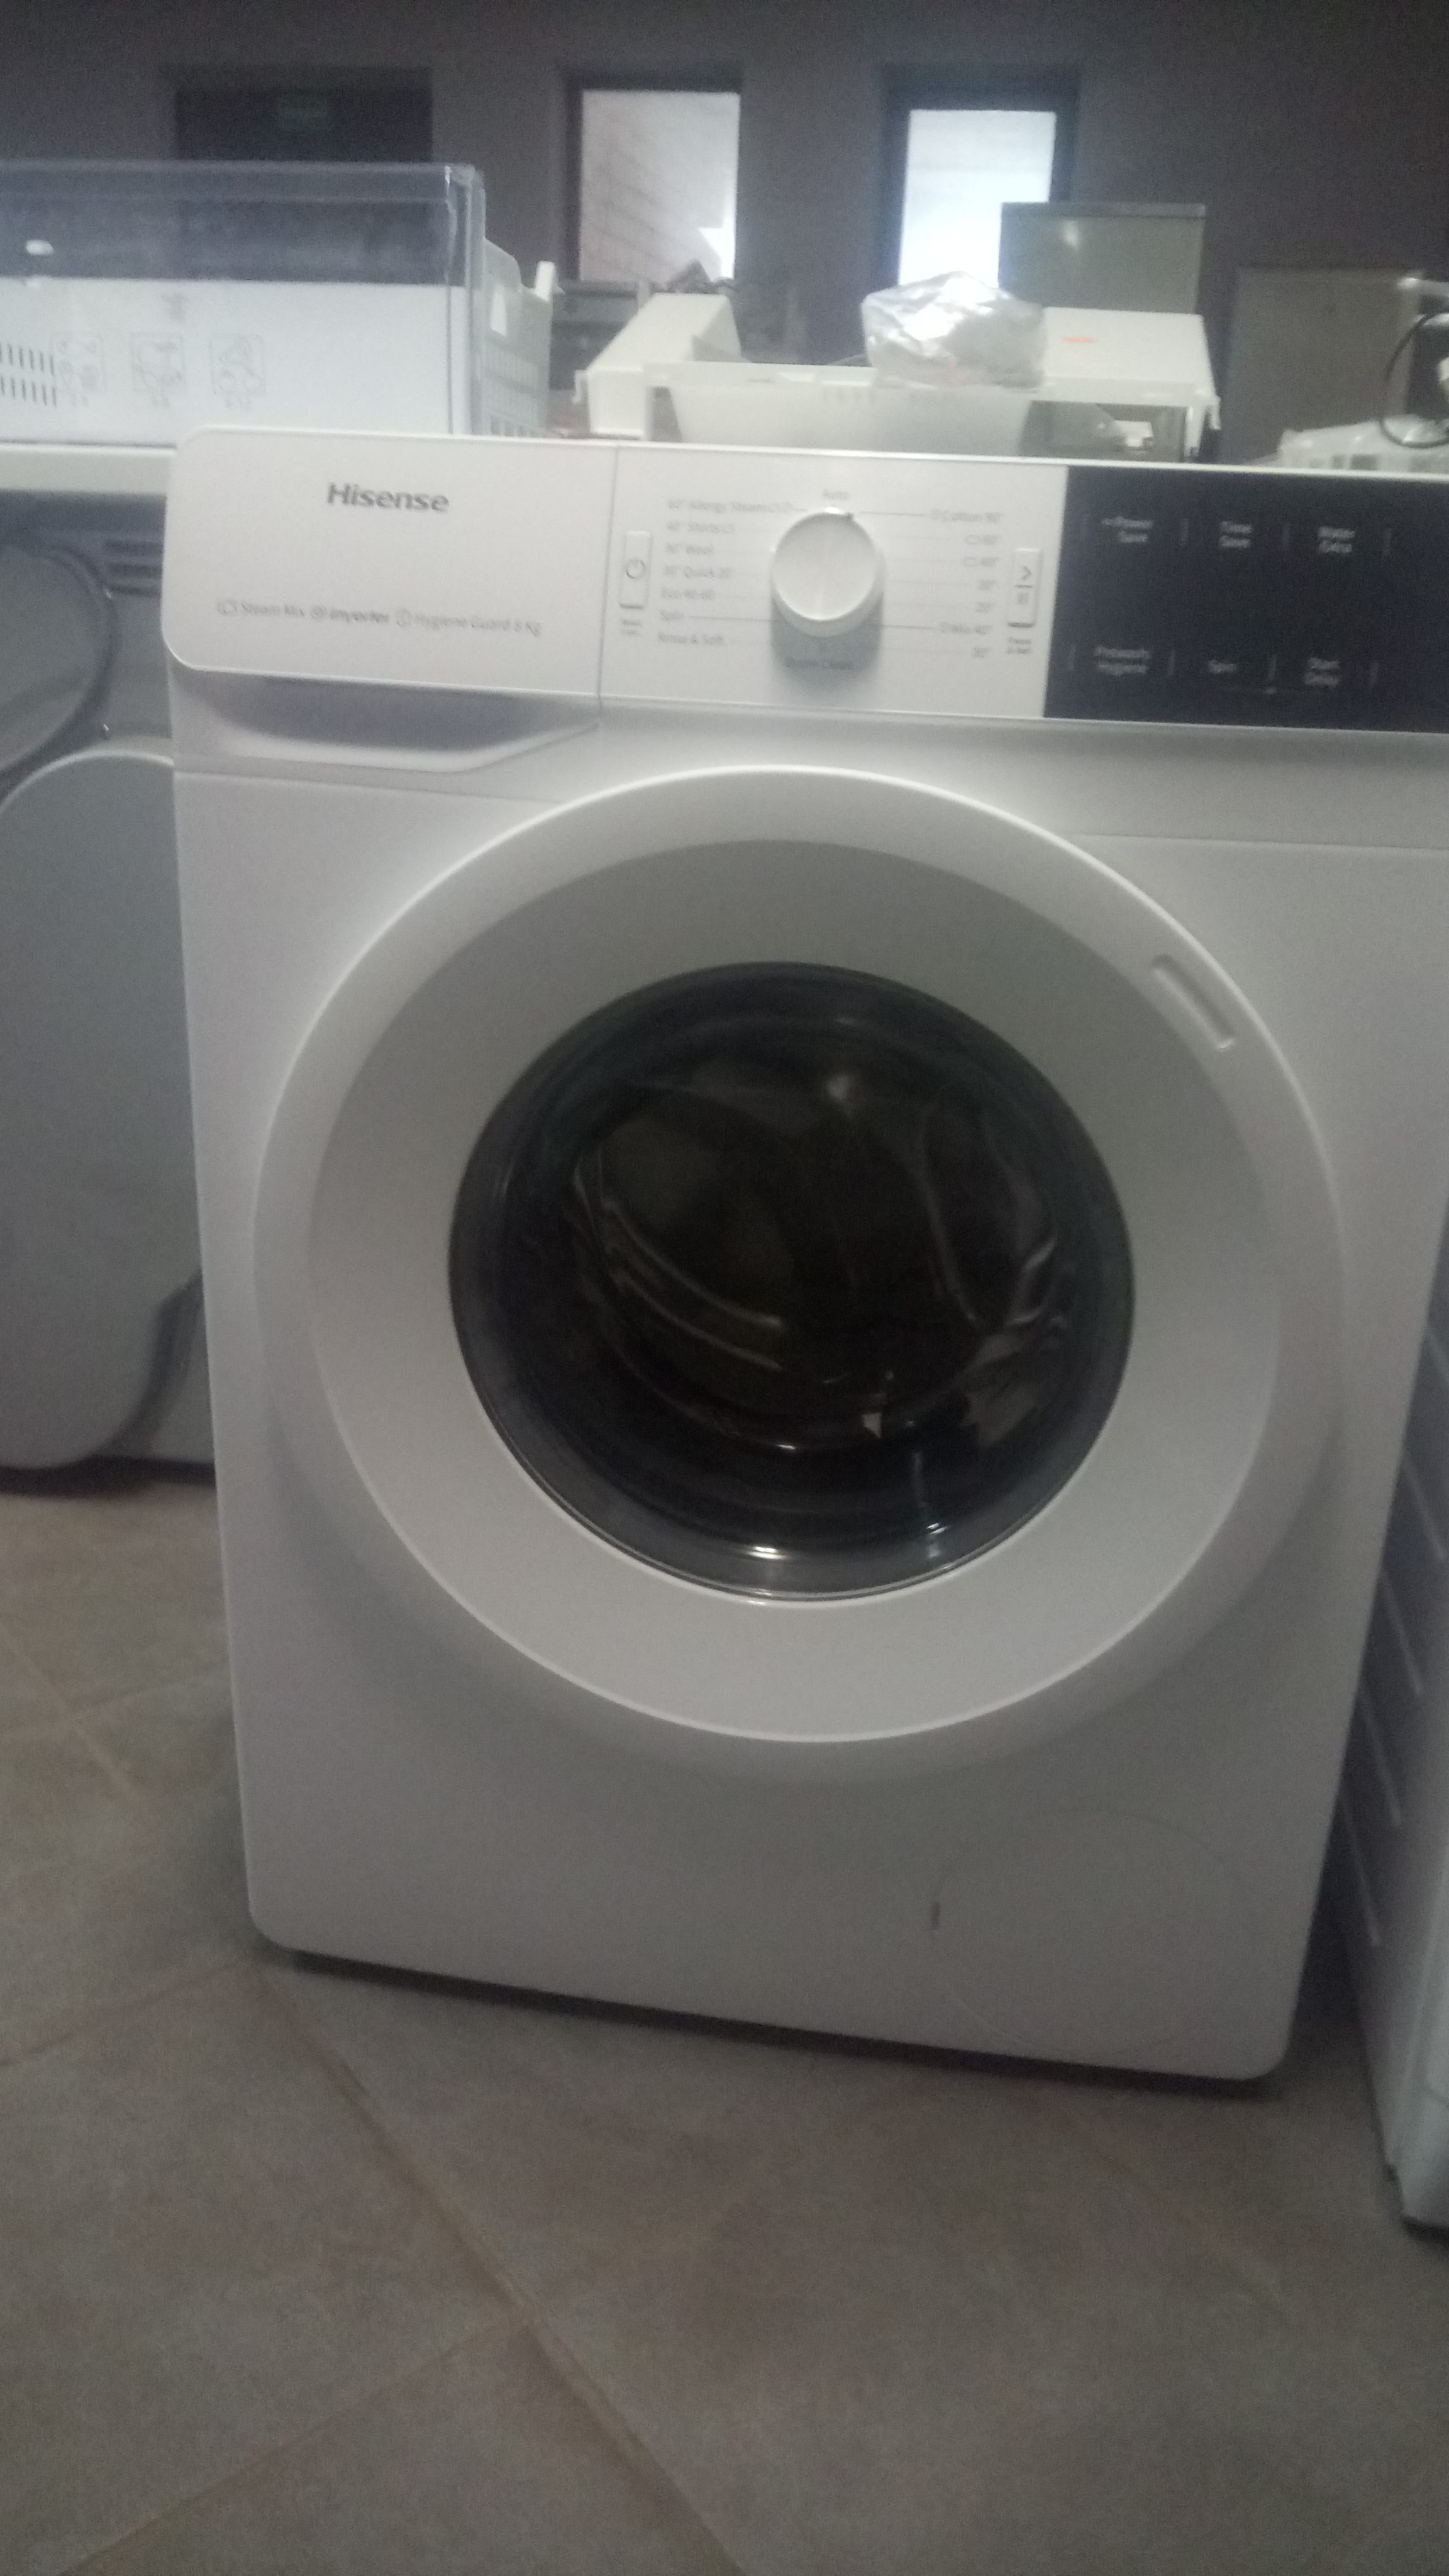 Washing machine HISENSE width 60cm length 60cm Washing machines, dishwashers and dryers